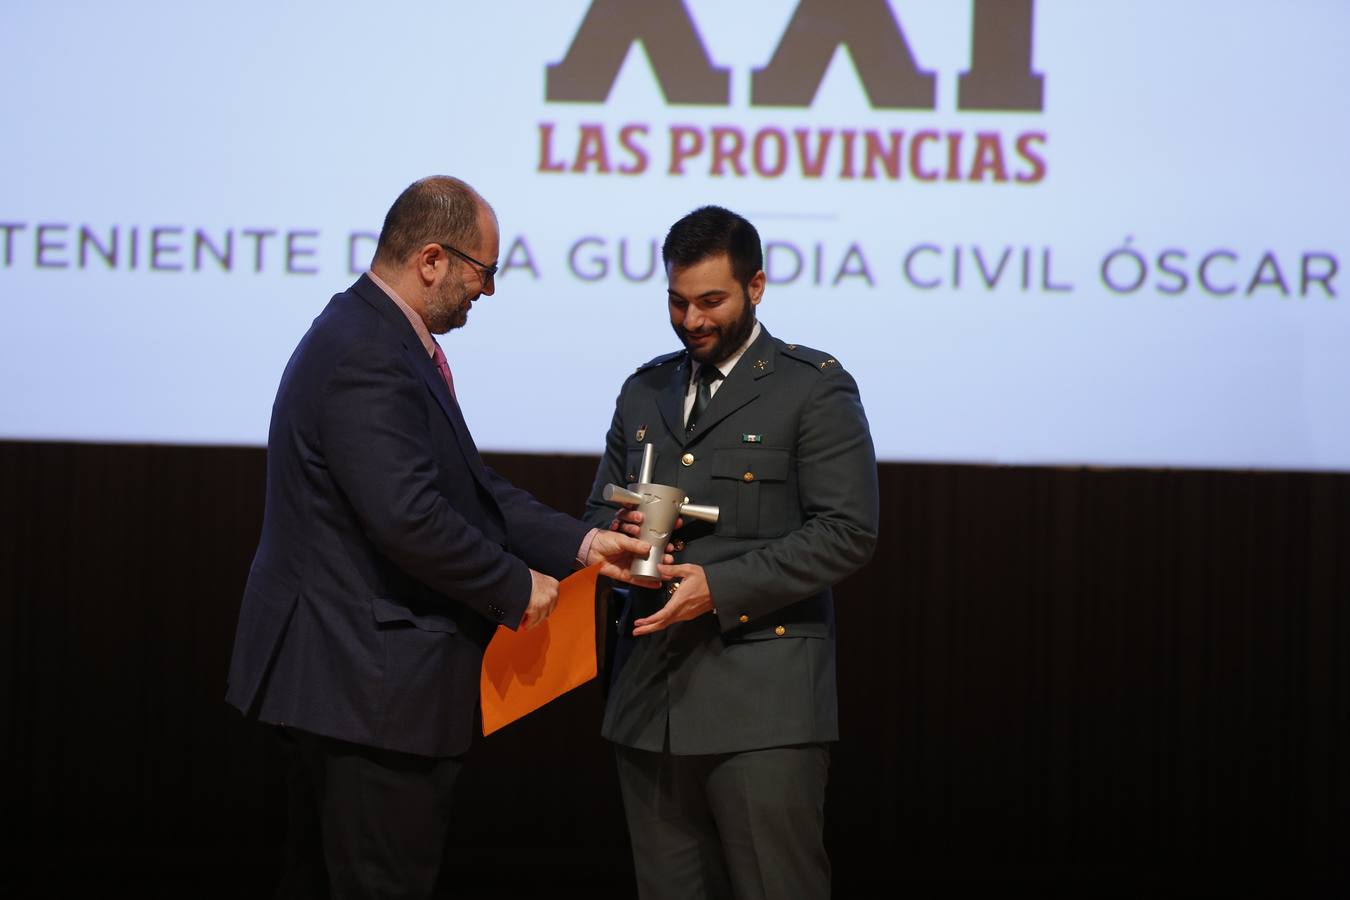 Paco Moreno, jefe de la sección de Valencia-Ciudad, entrega el premio Valenciano para el Siglo XXI de LAS PROVINCIAS 2018, a Óscar Arenas, uno de los guardias civiles agredidos en Alsasua.